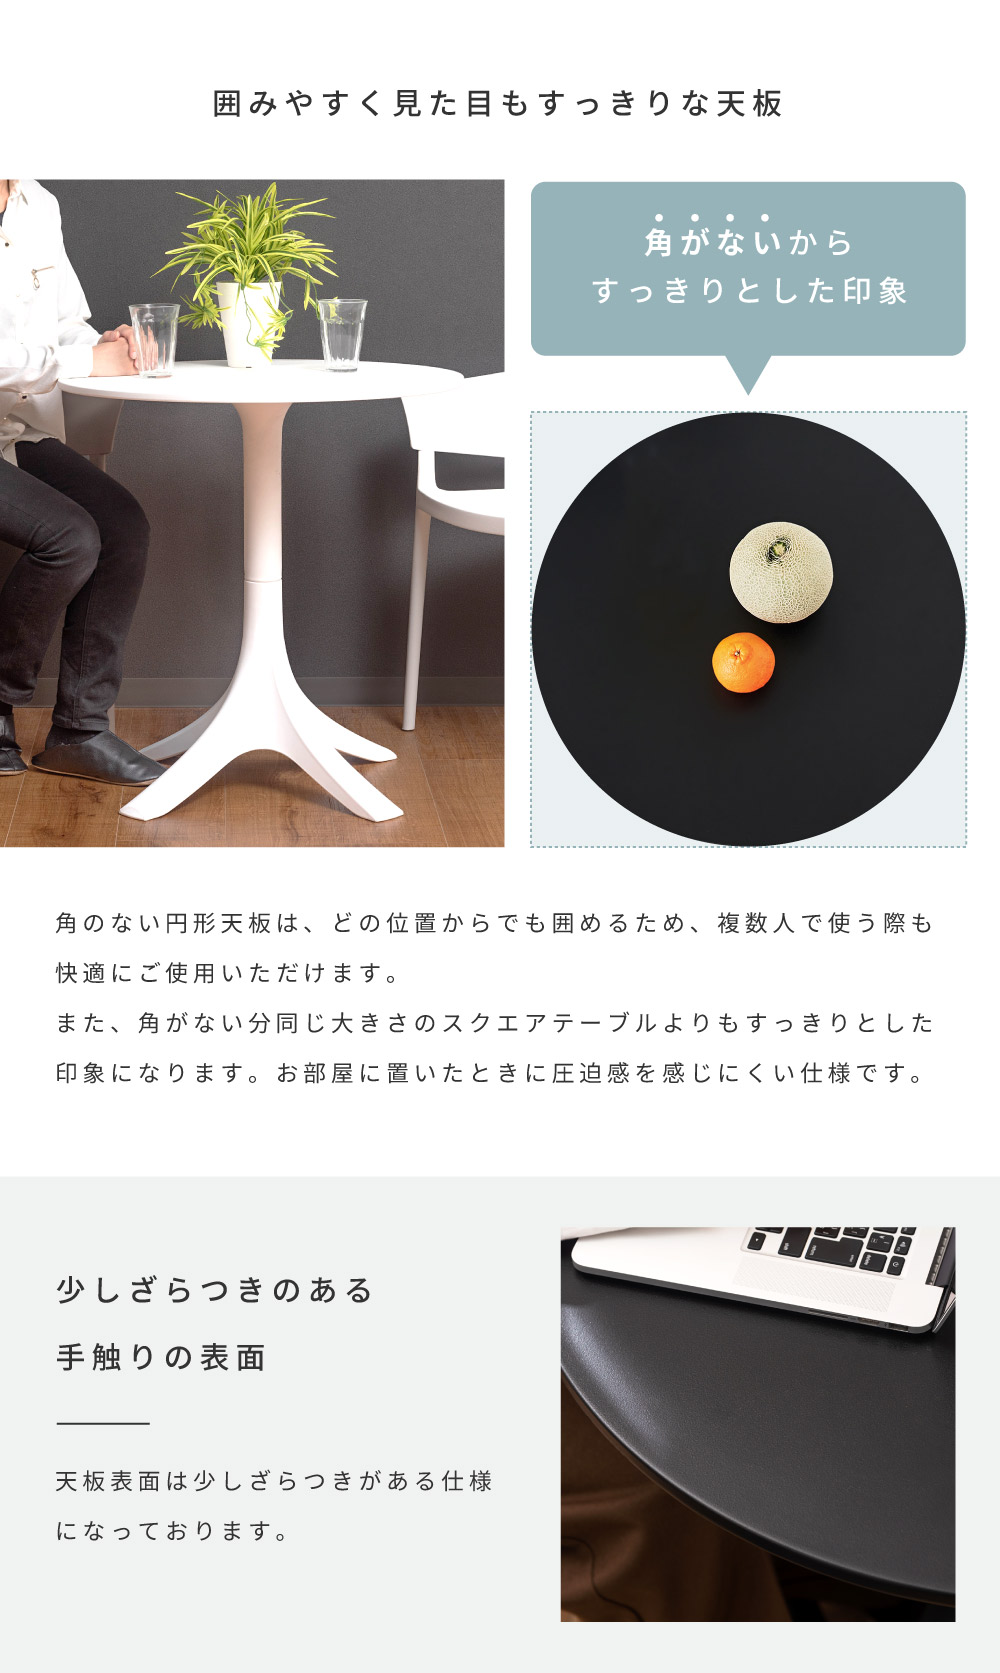 カフェテーブル テーブル おしゃれ デスク 円形 ラウンド サークル ポリプロピレン プラスチック 黒 白 ブラック ホワイト シンプル モダン